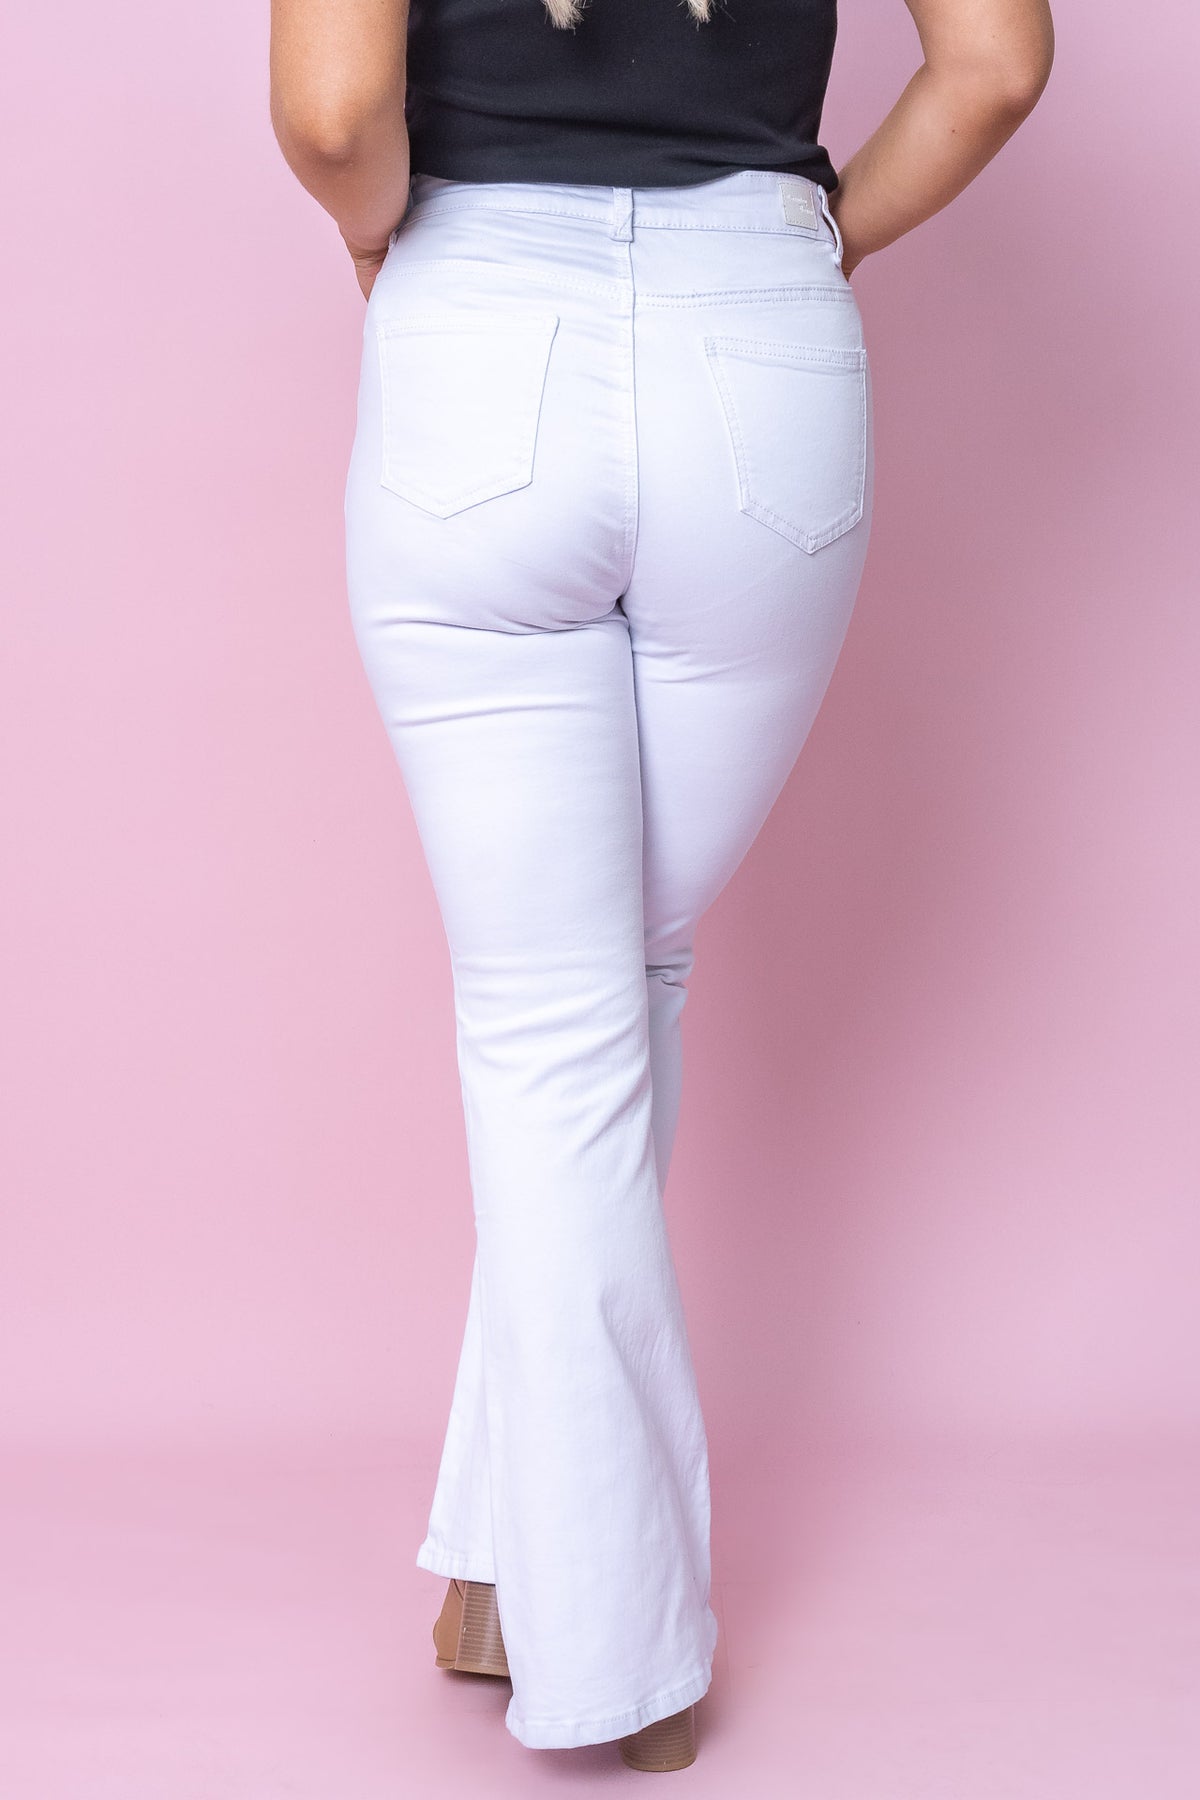 Darlena Jeans in White